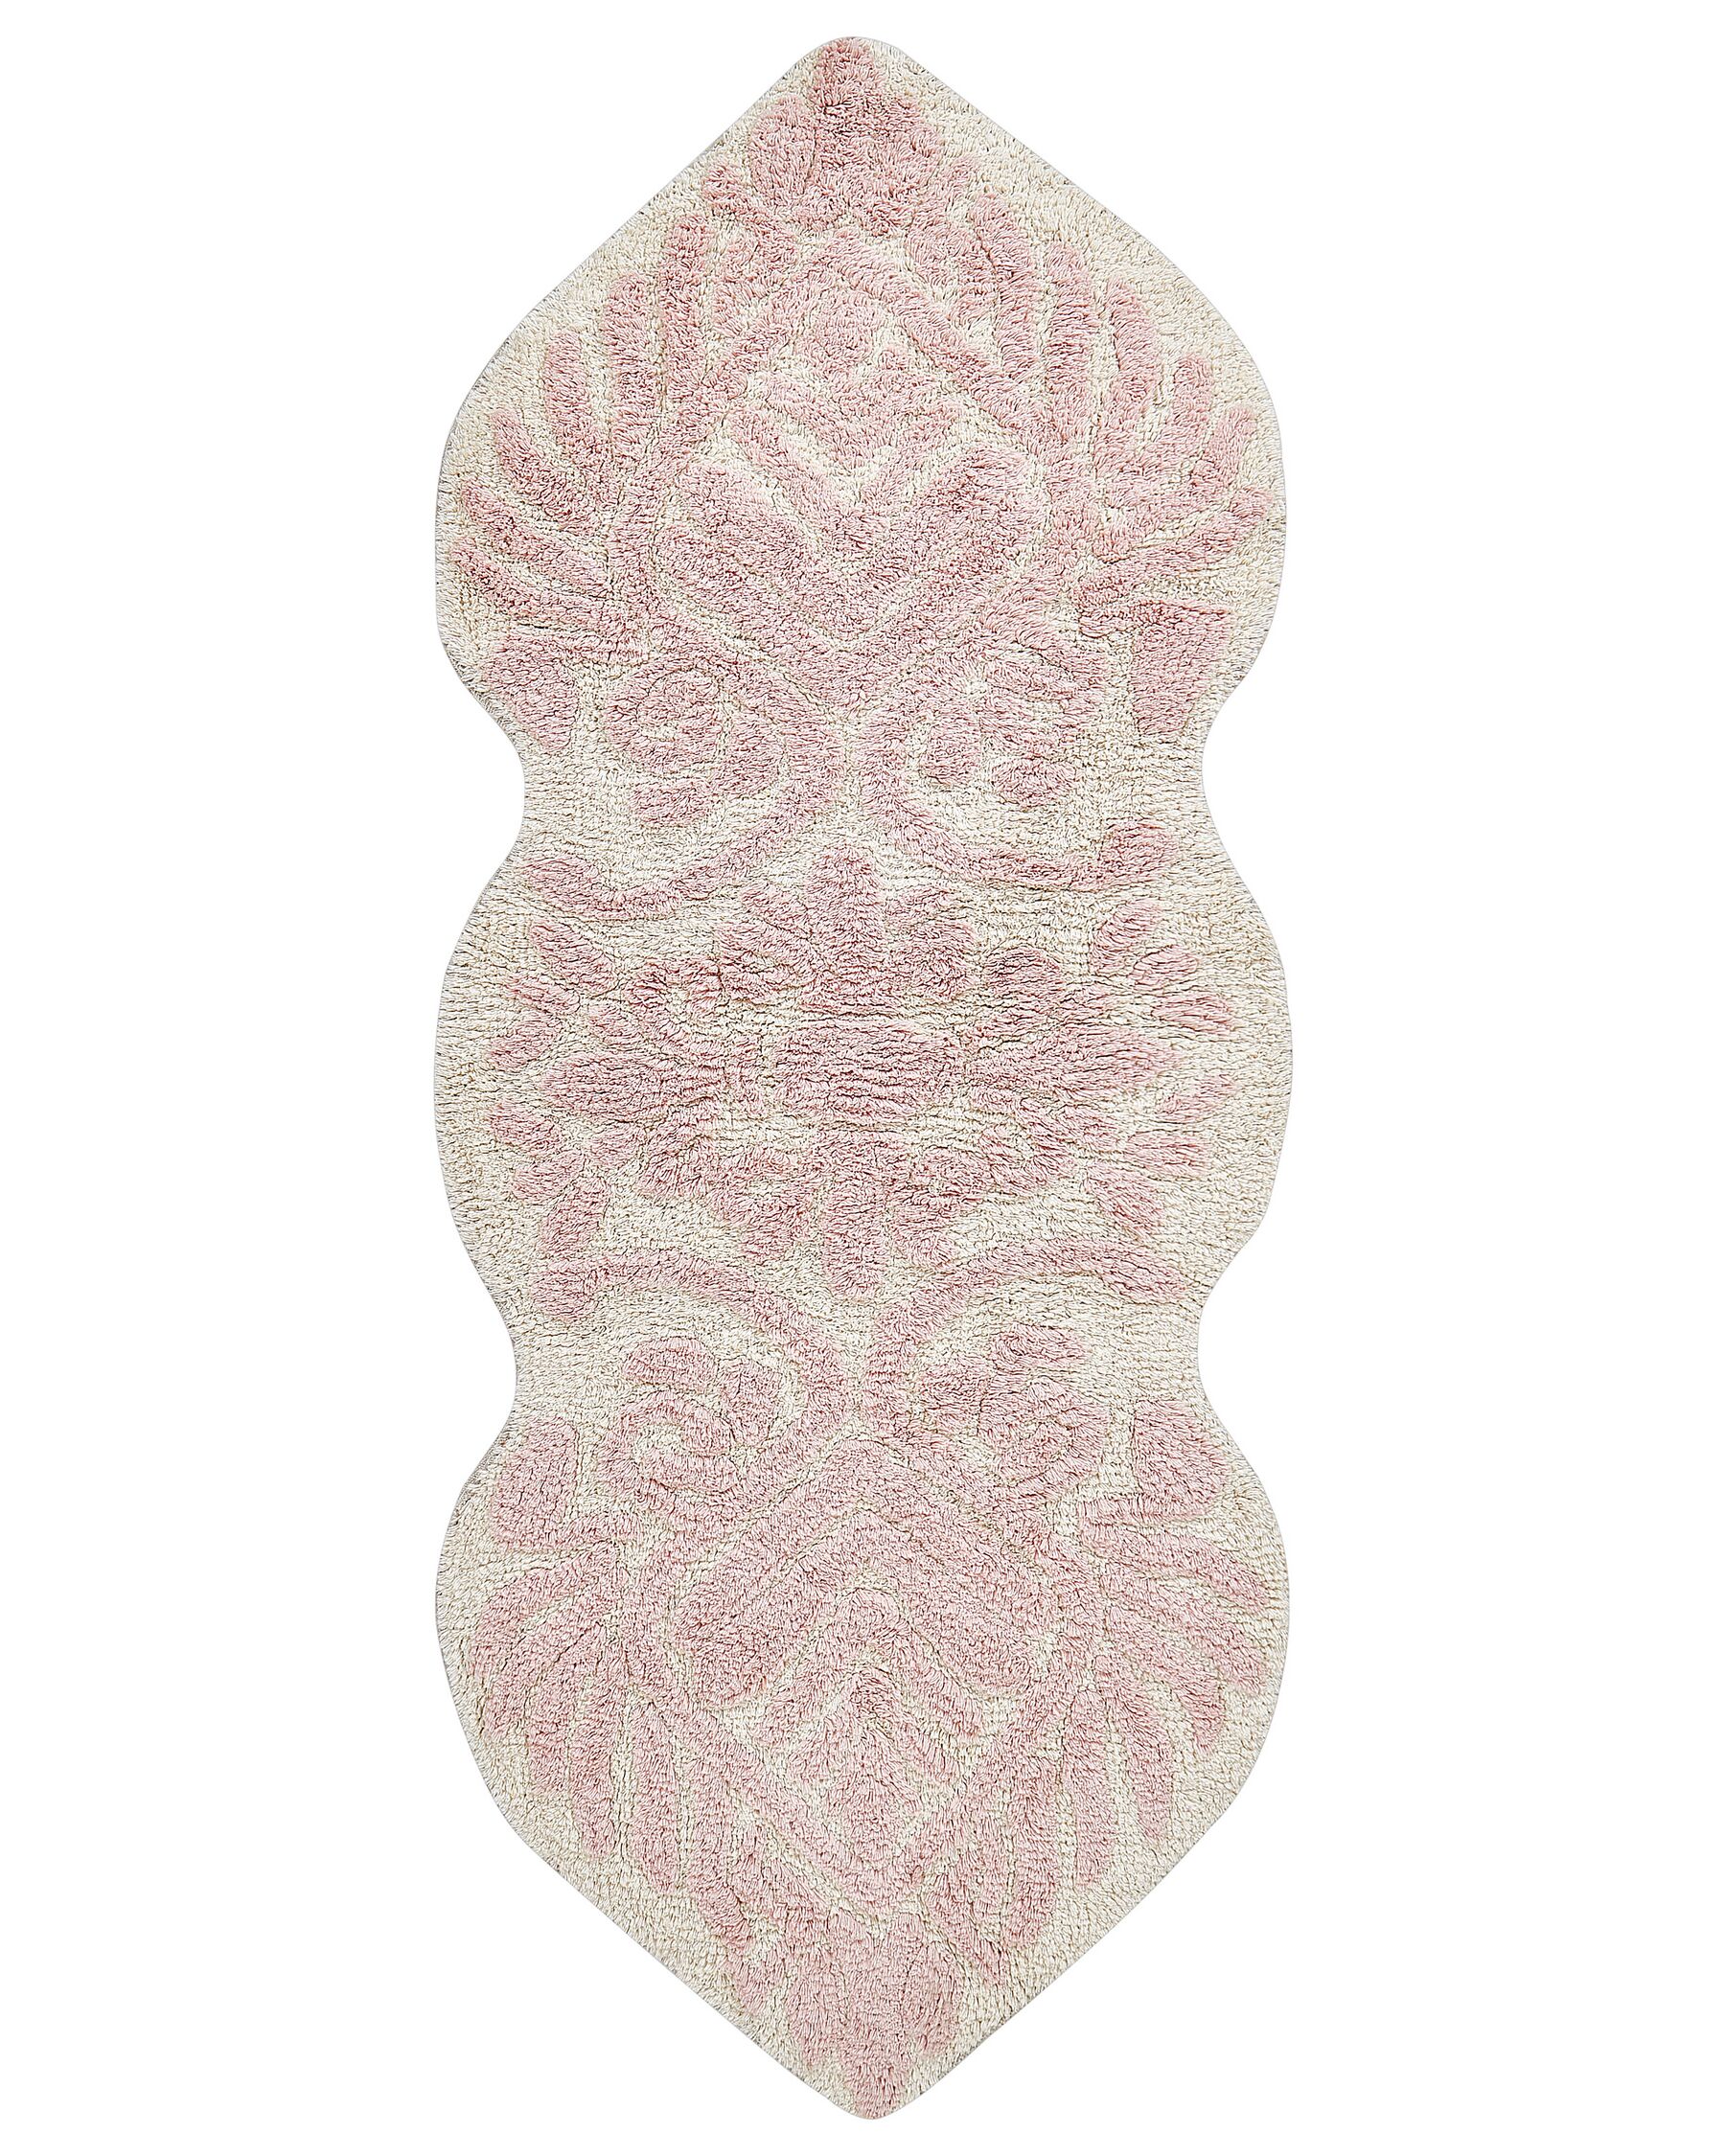 Tappetino per bagno cotone rosa 150 x 60 cm CANBAR_905475